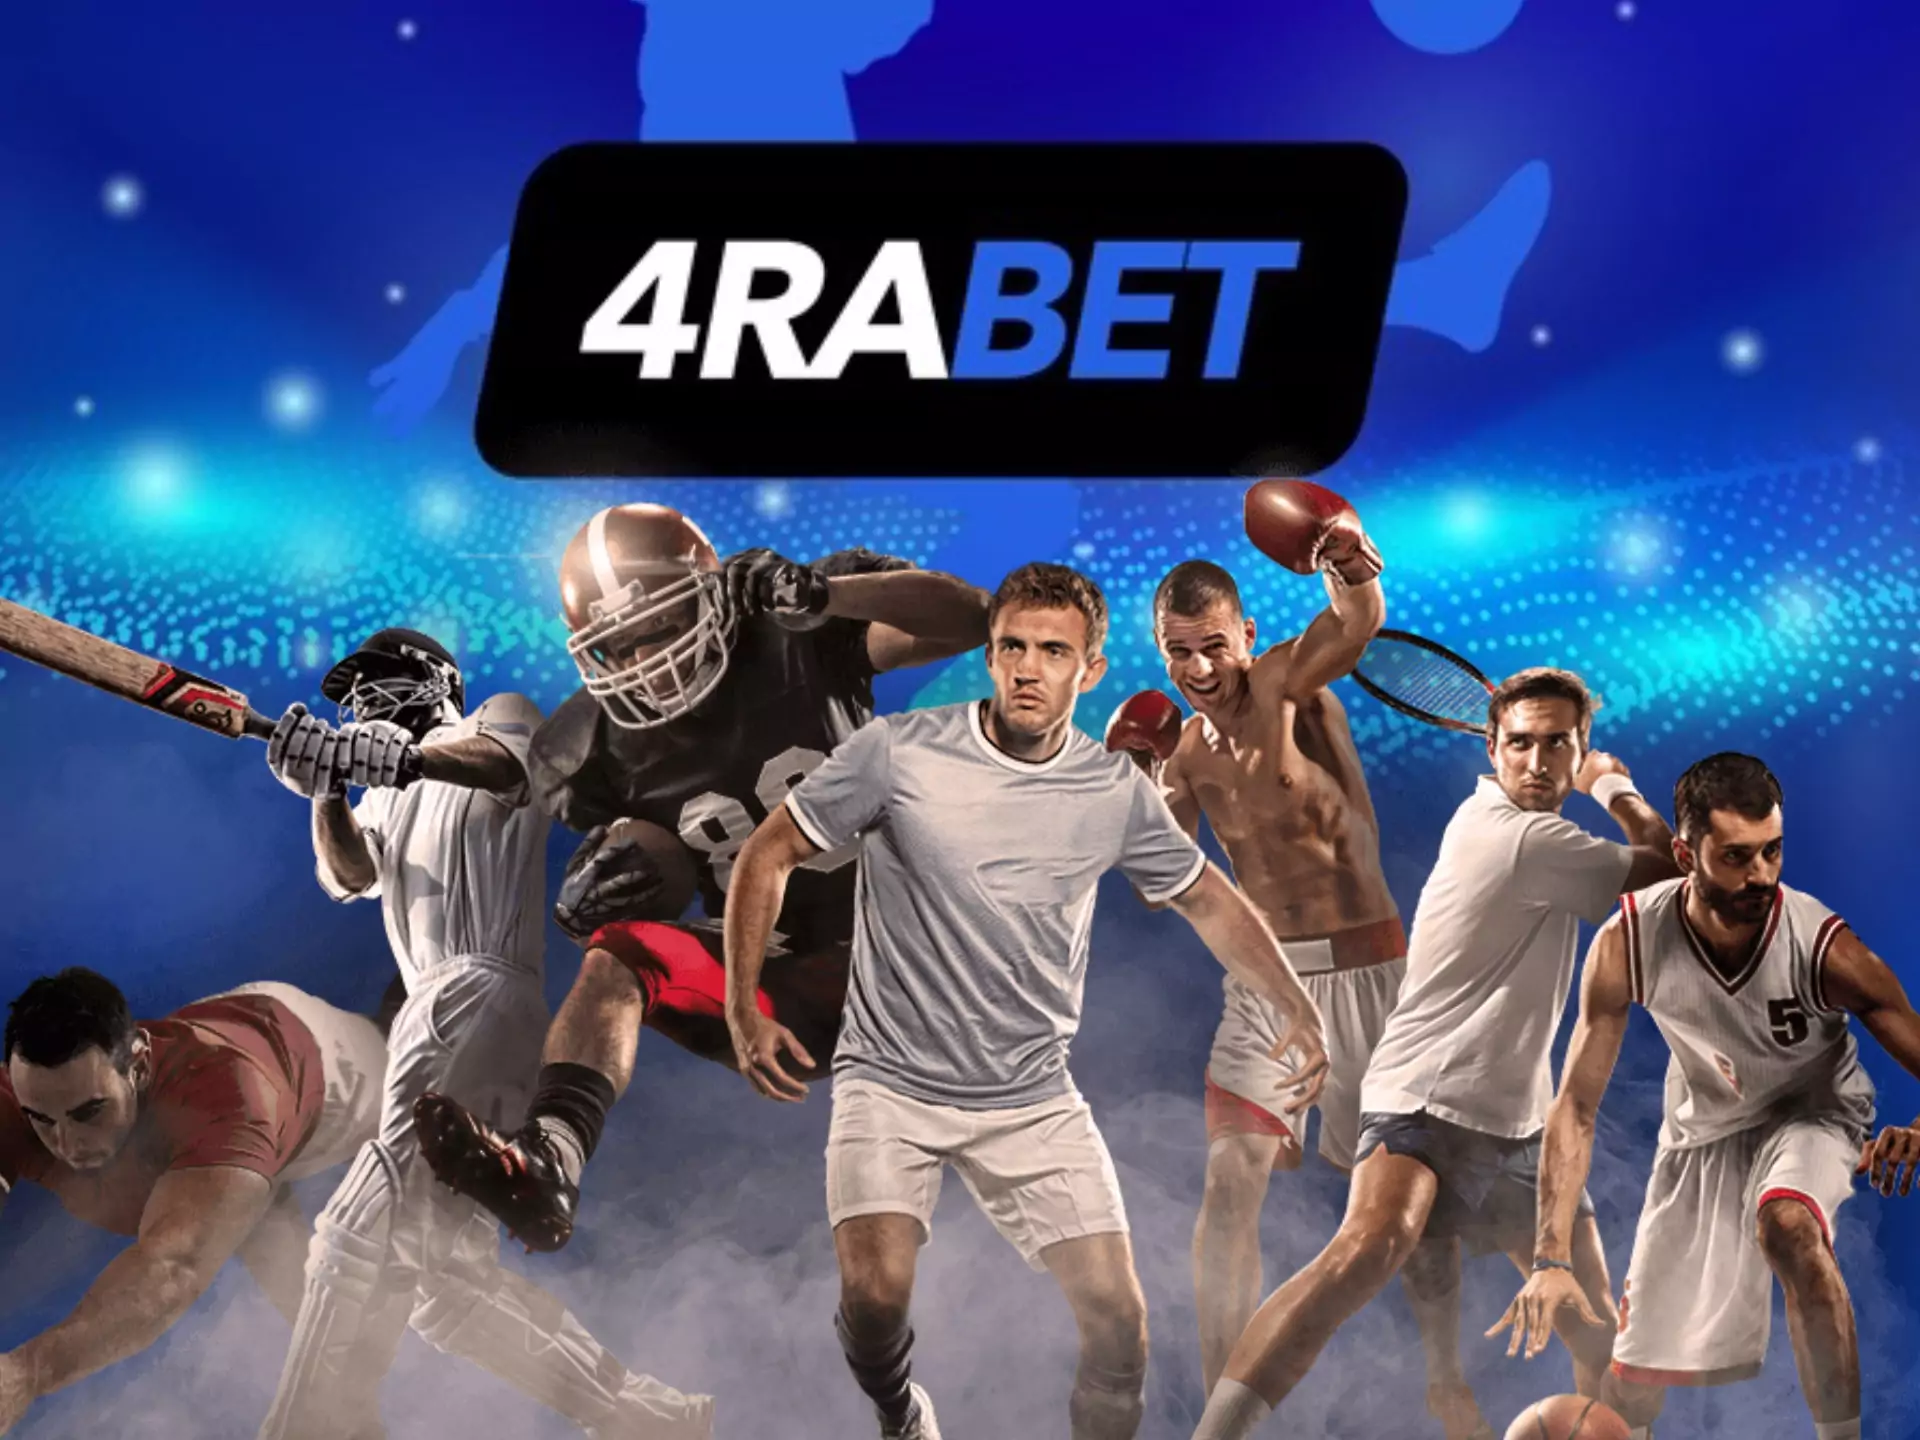 4rabet भारतीय खिलाड़ियों के लिए सुविधाजनक सट्टेबाजी के लिए एक नई और आधुनिक ऑनलाइन स्पोर्ट्सबुक है।